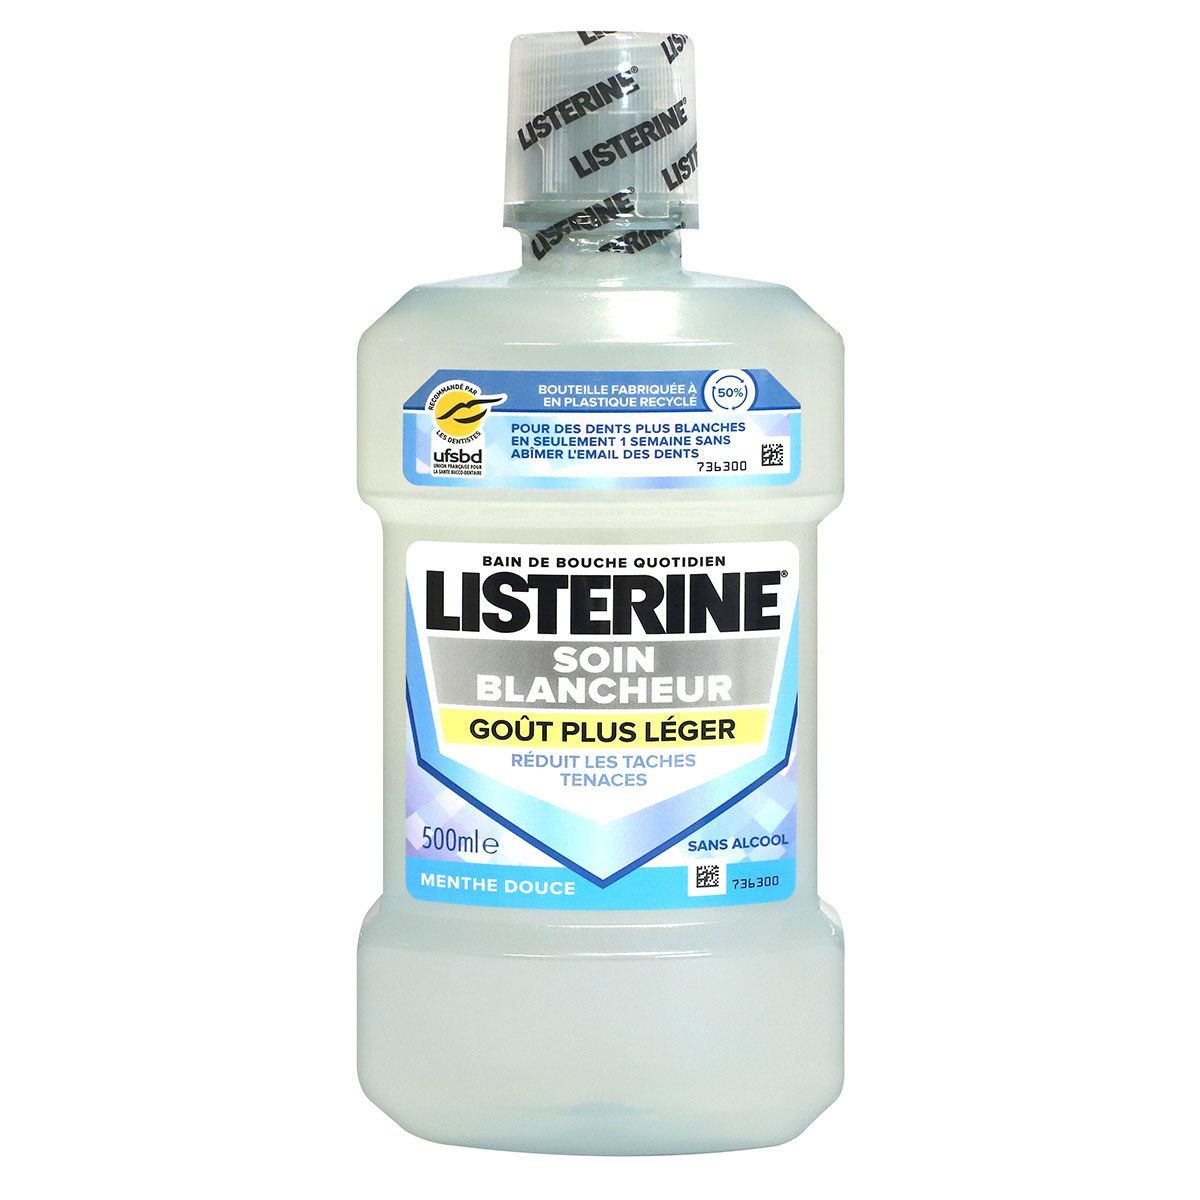 Le bain de bouche soin blancheur Listerine est une solution